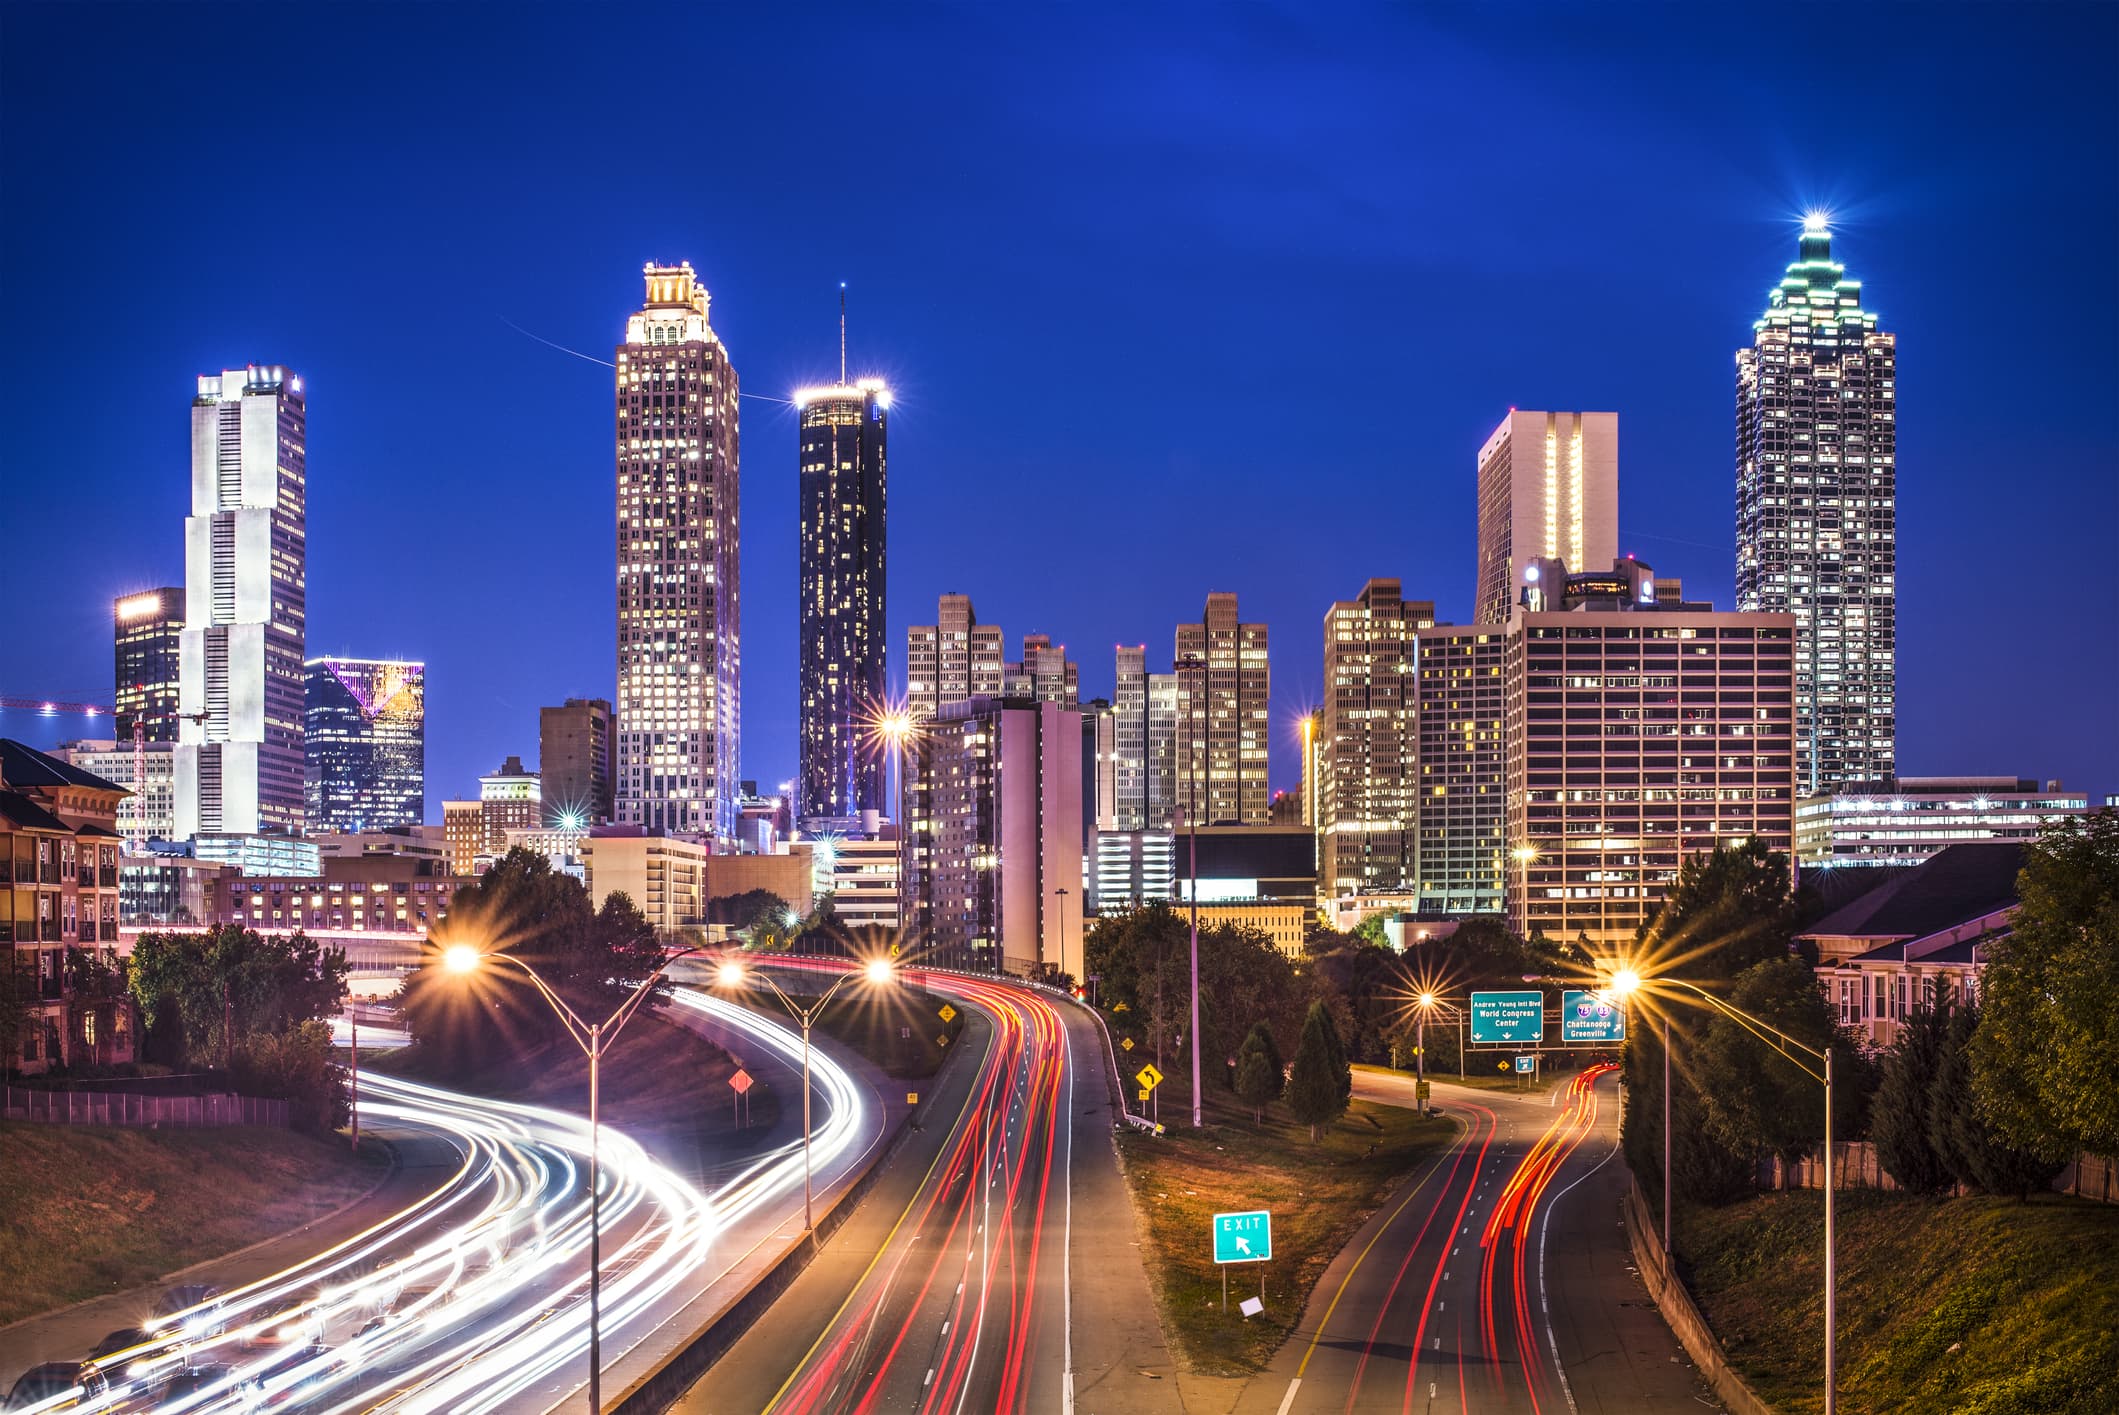 A view of Atlanta's skyline